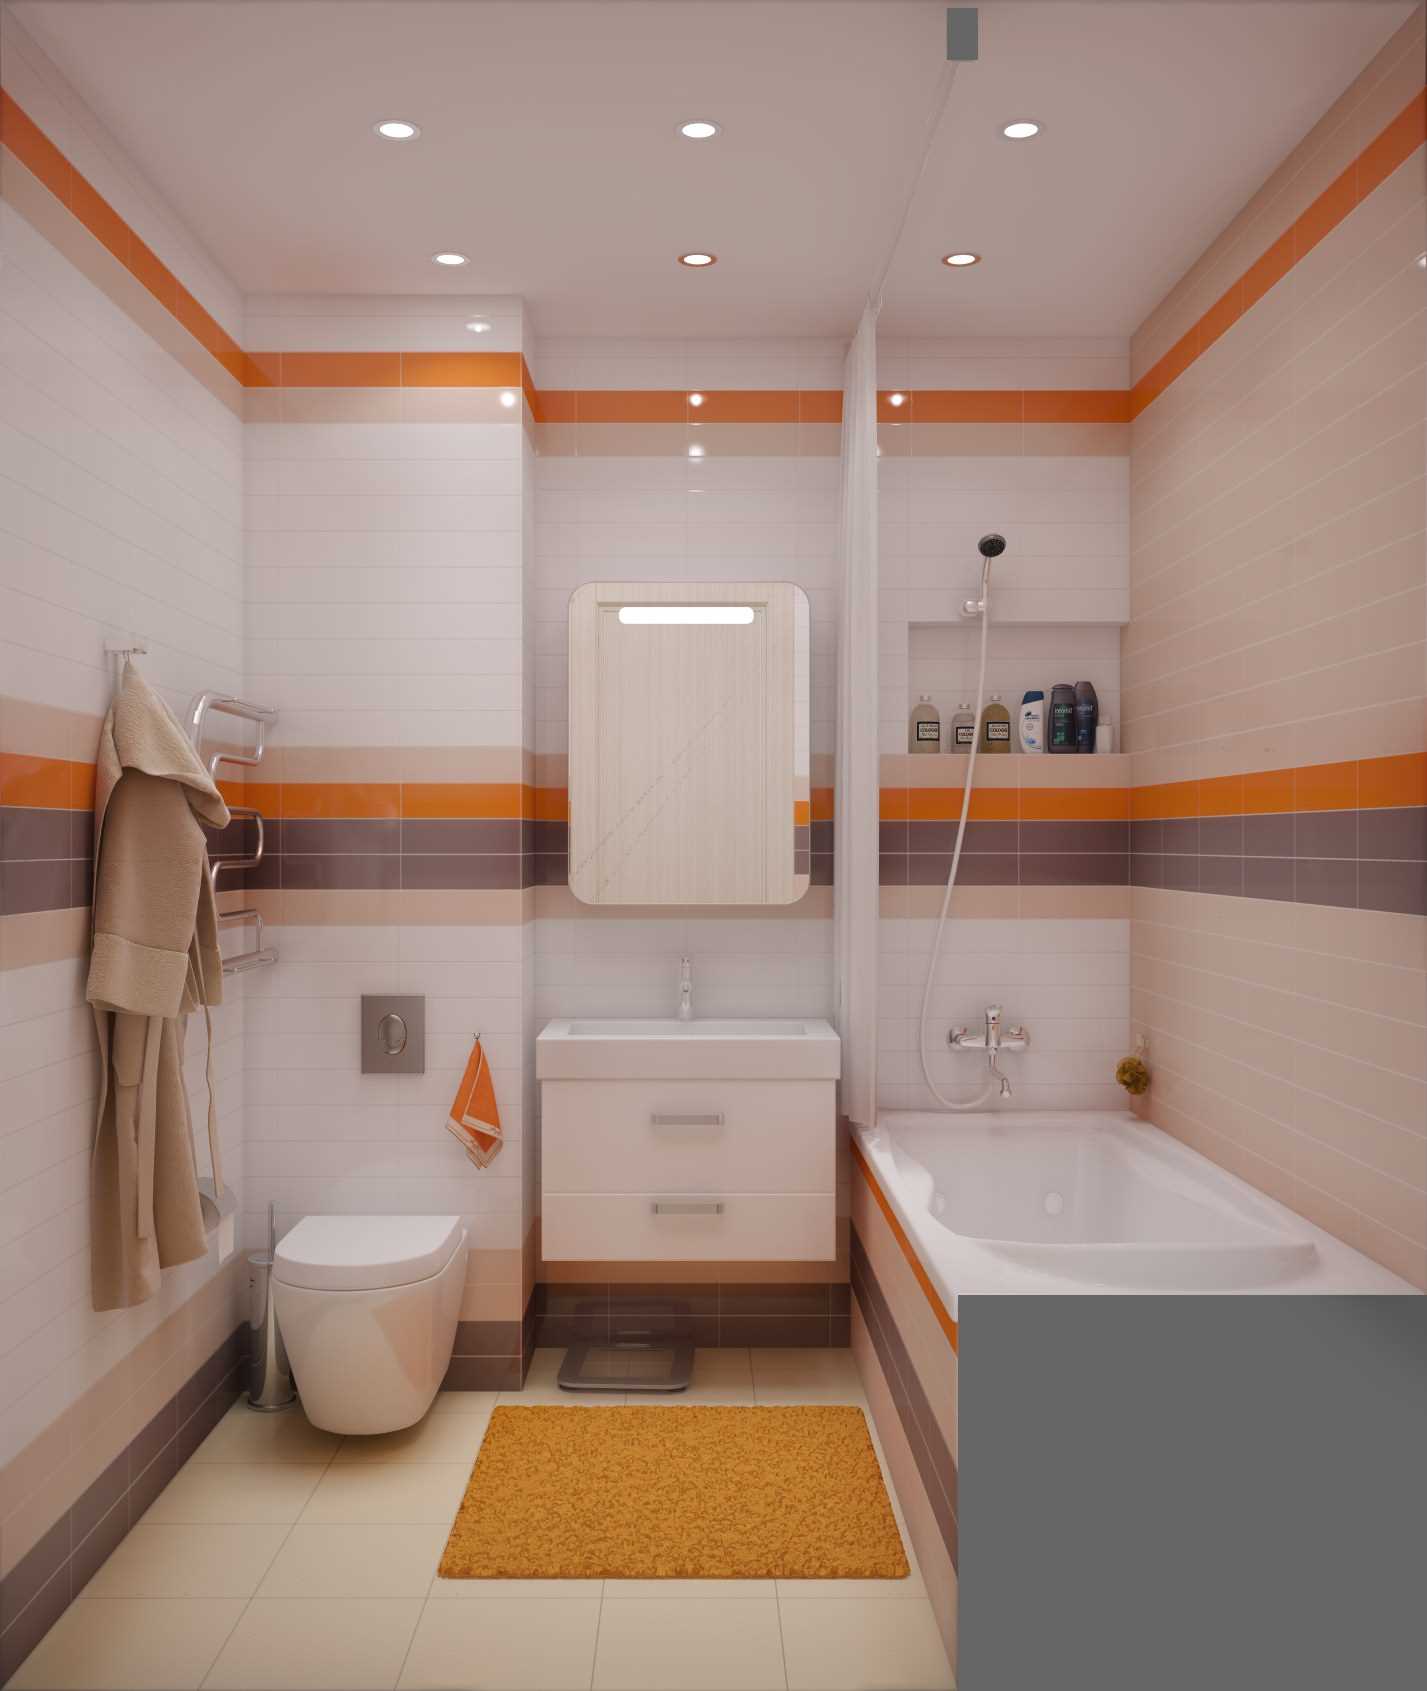 version du style moderne de la salle de bain 2,5 m2